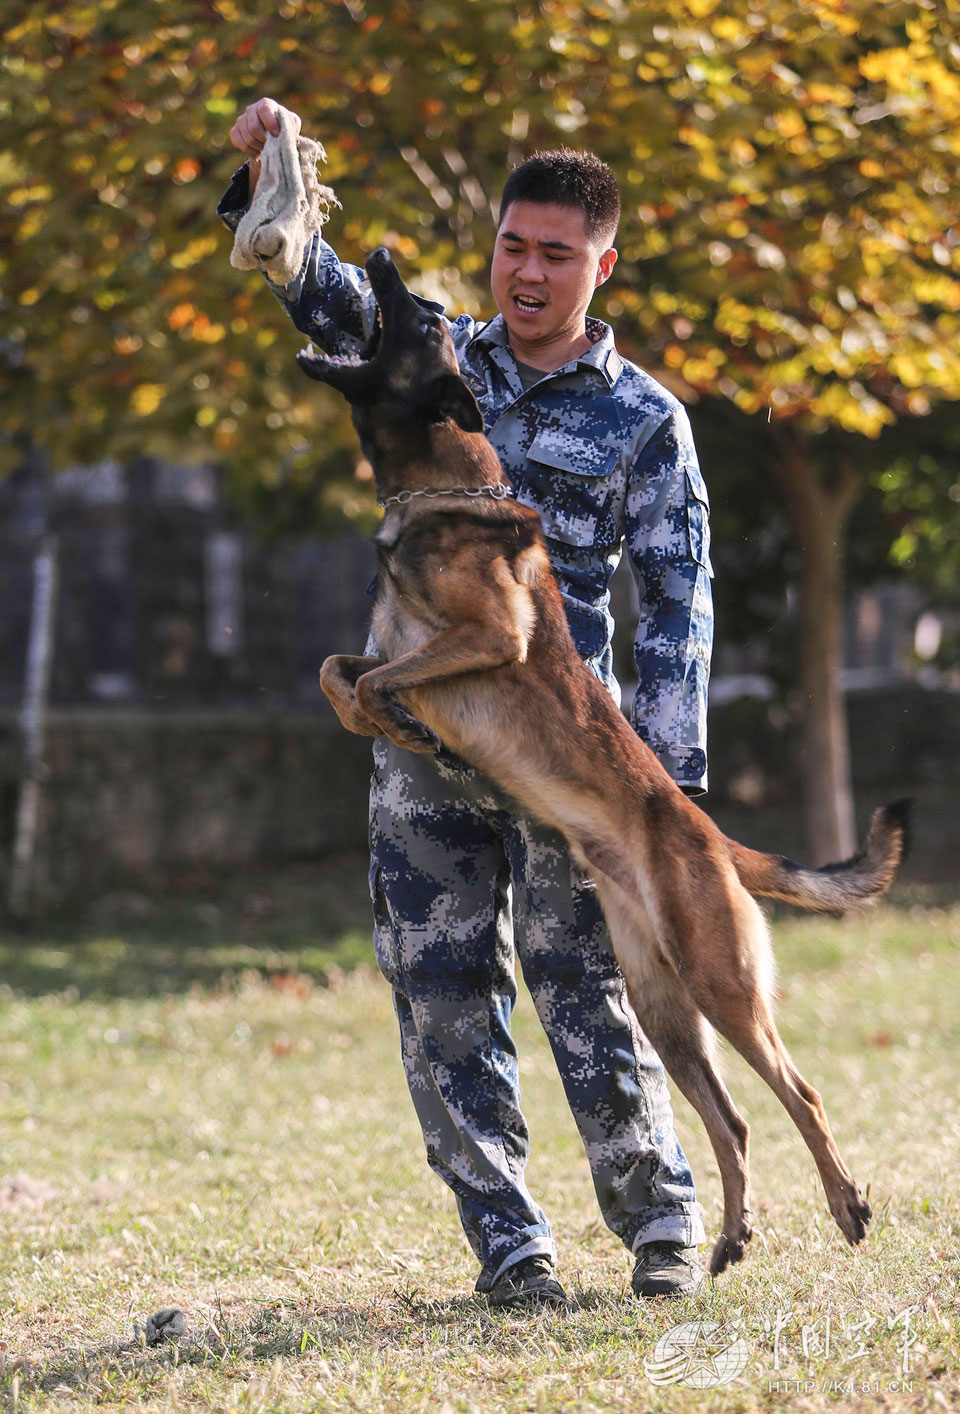 高清:空军军犬飞跃穿火圈 巧救被捆绑战士